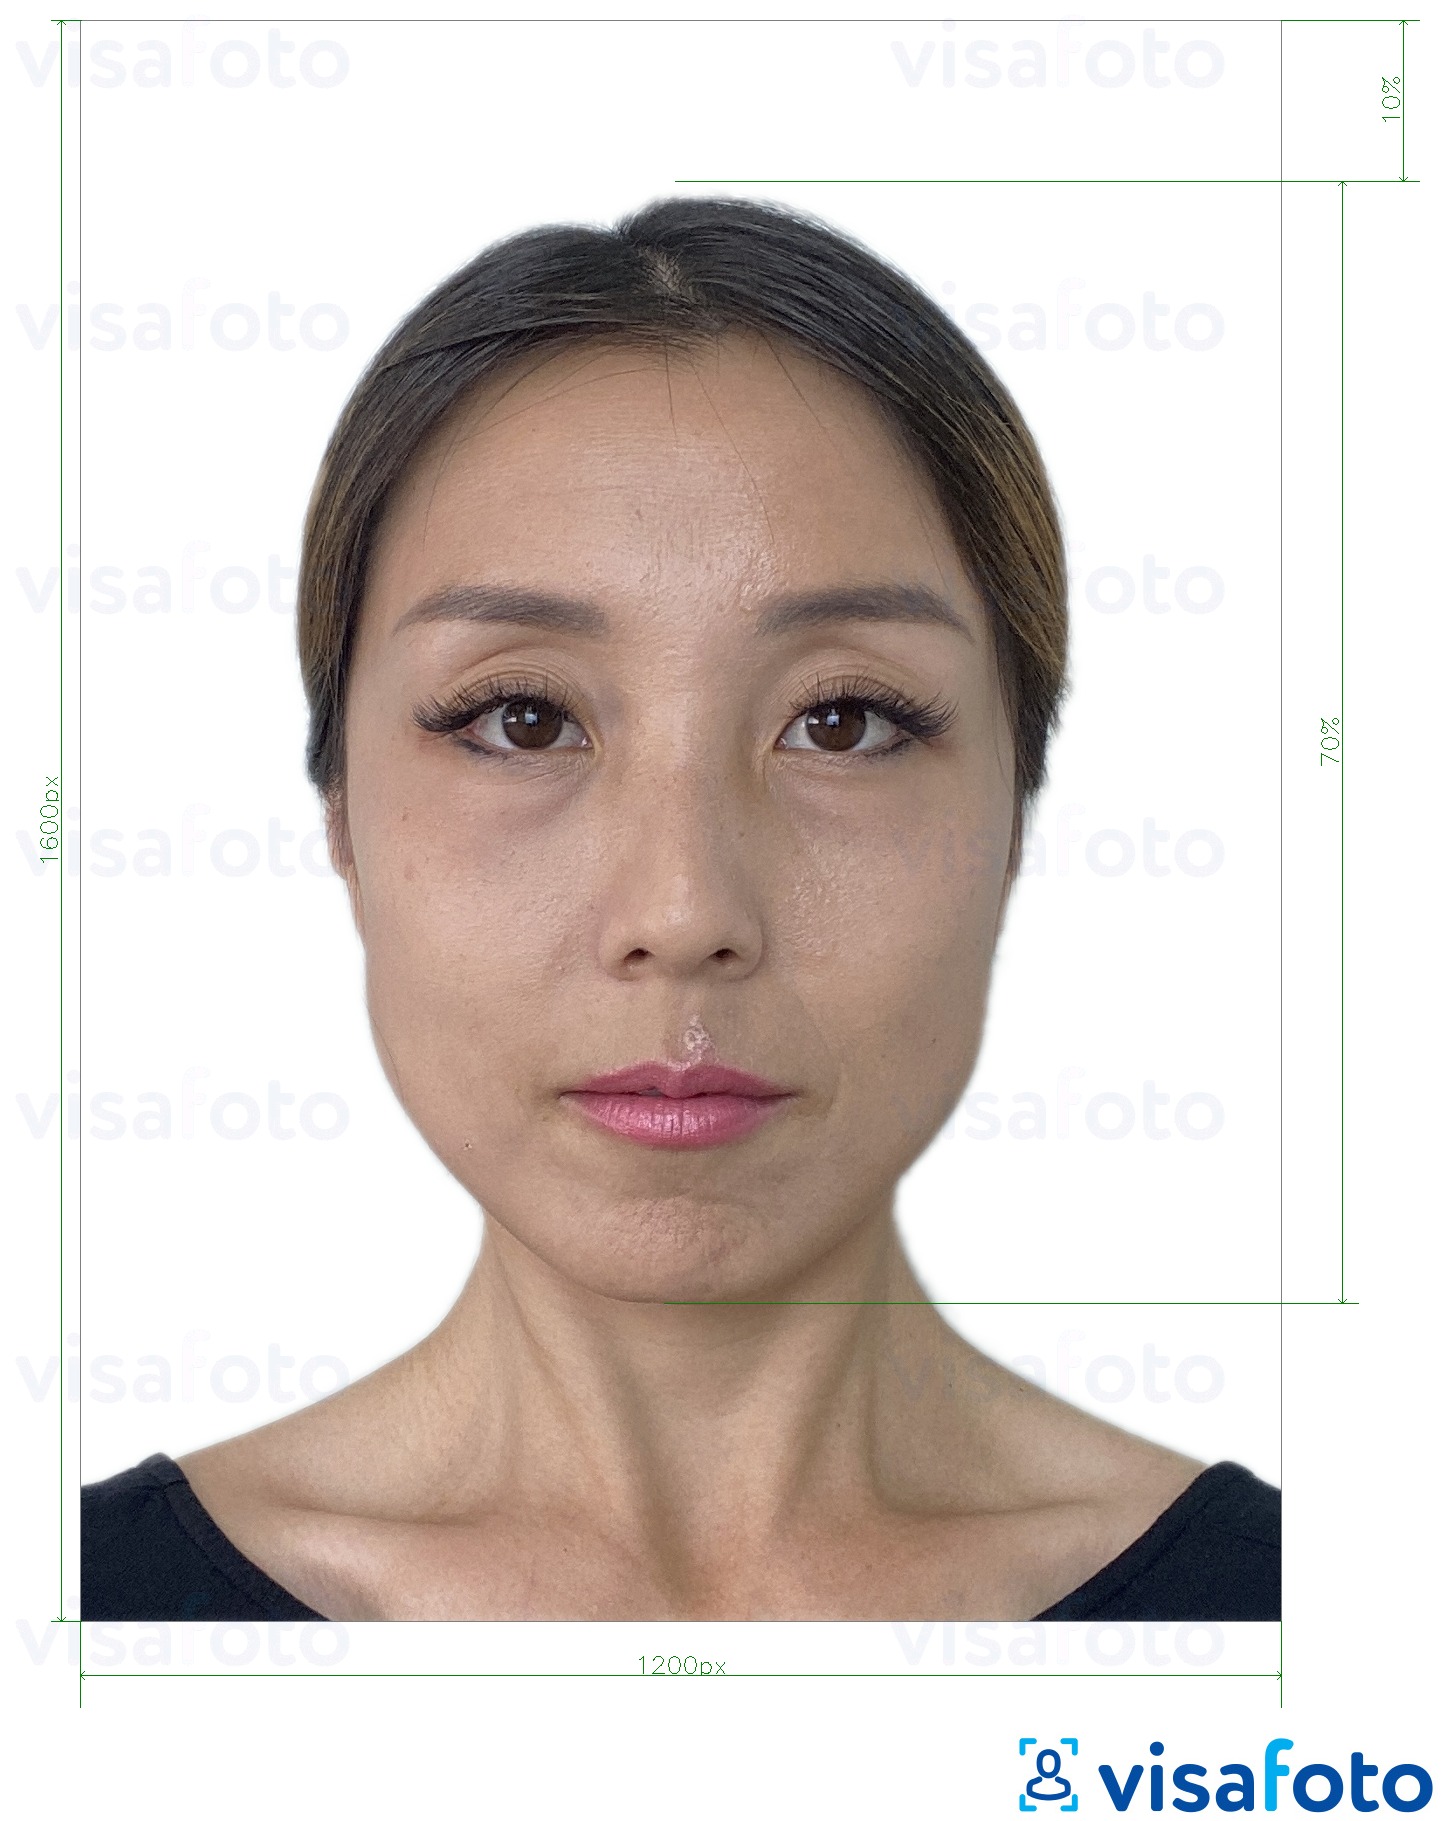 Exemple de foto per a Passaport electrònic de Hong Kong en línia 1200x1600 píxels amb la mida exacta especificada